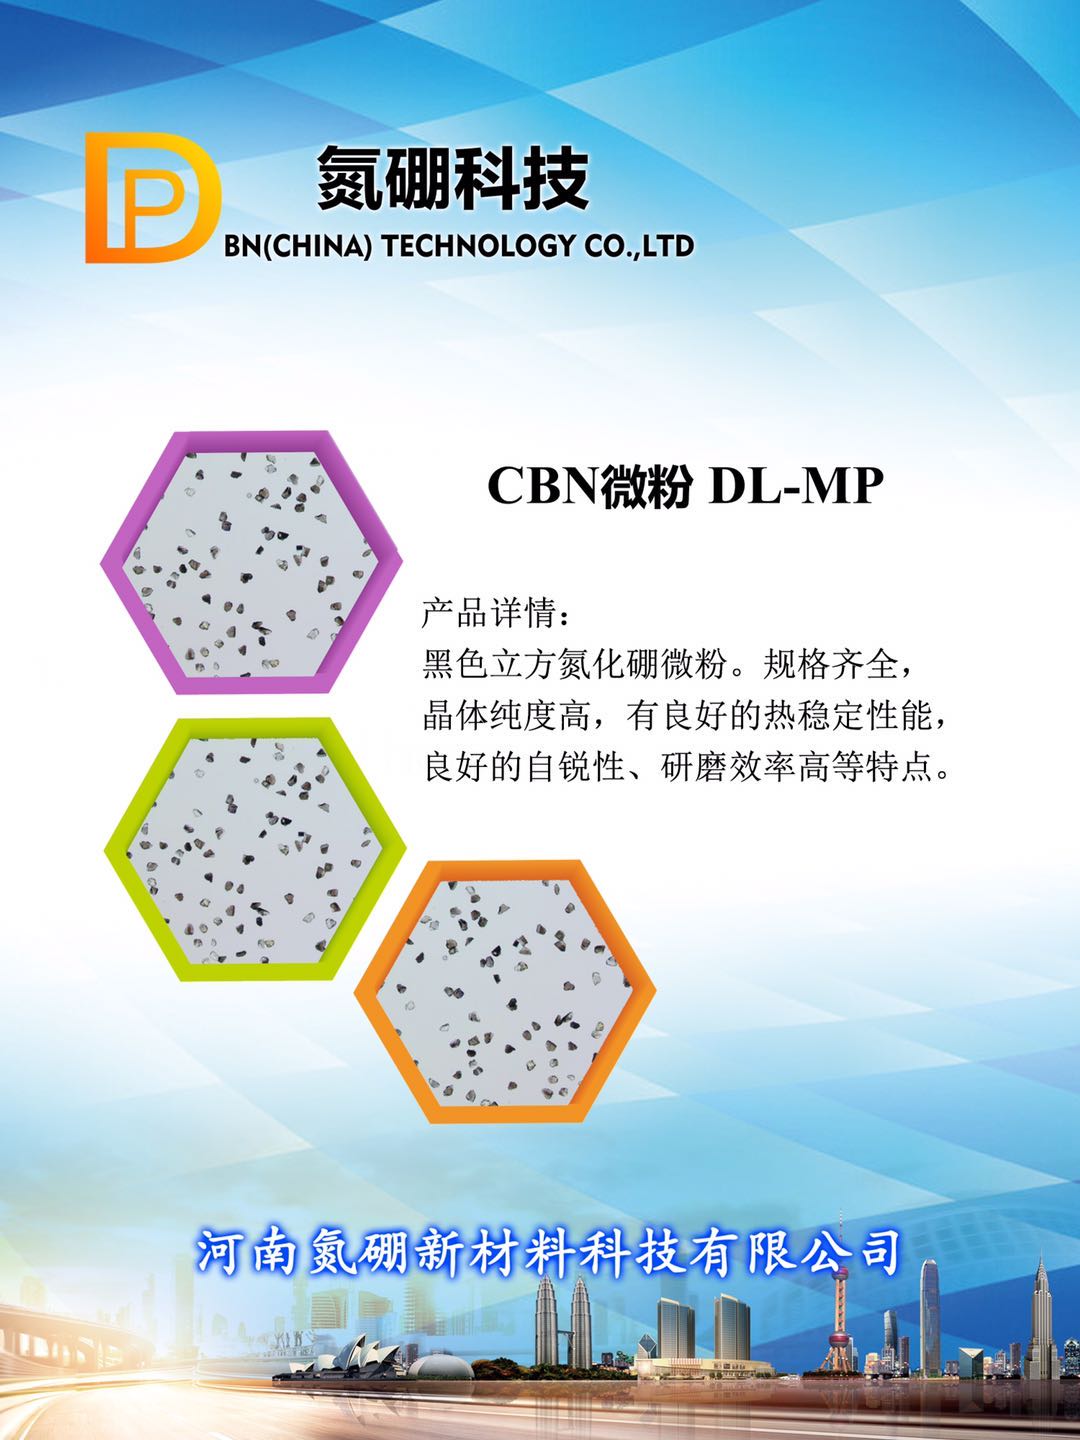 立方氮化硼CBN单晶微粉 加工不同的工件 氮硼科技DP